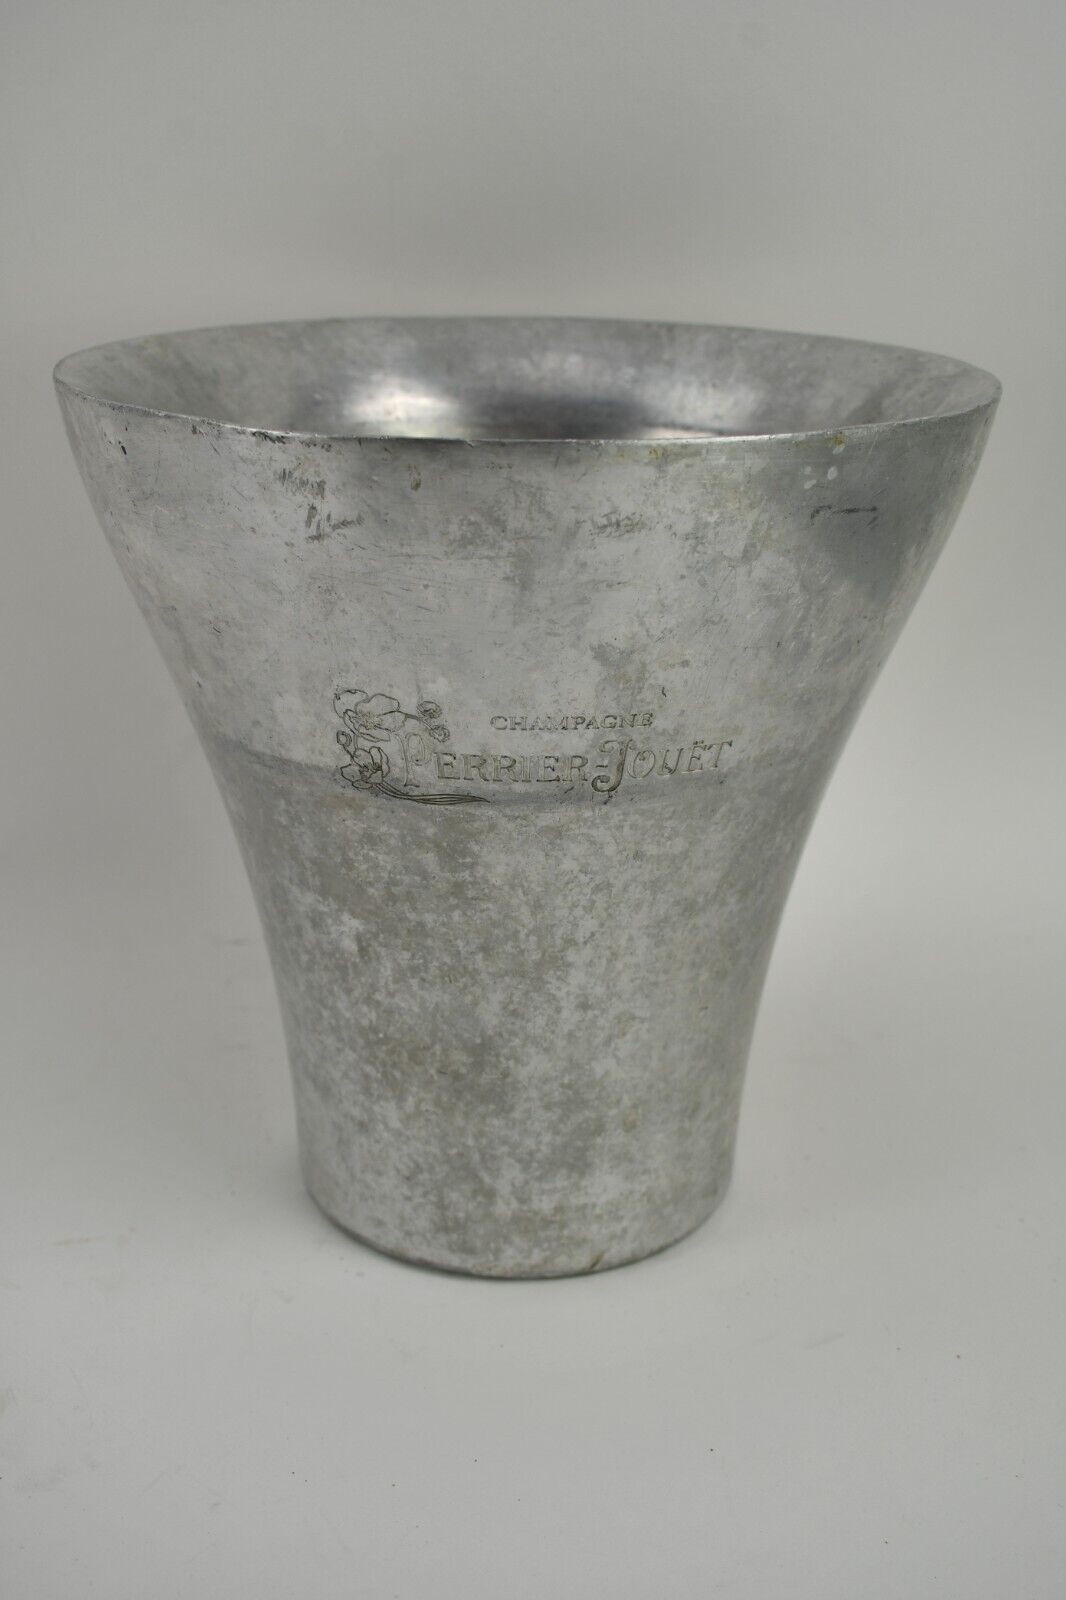 Perrier Jouet Champagne Cooler Aluminum Ice Bucket